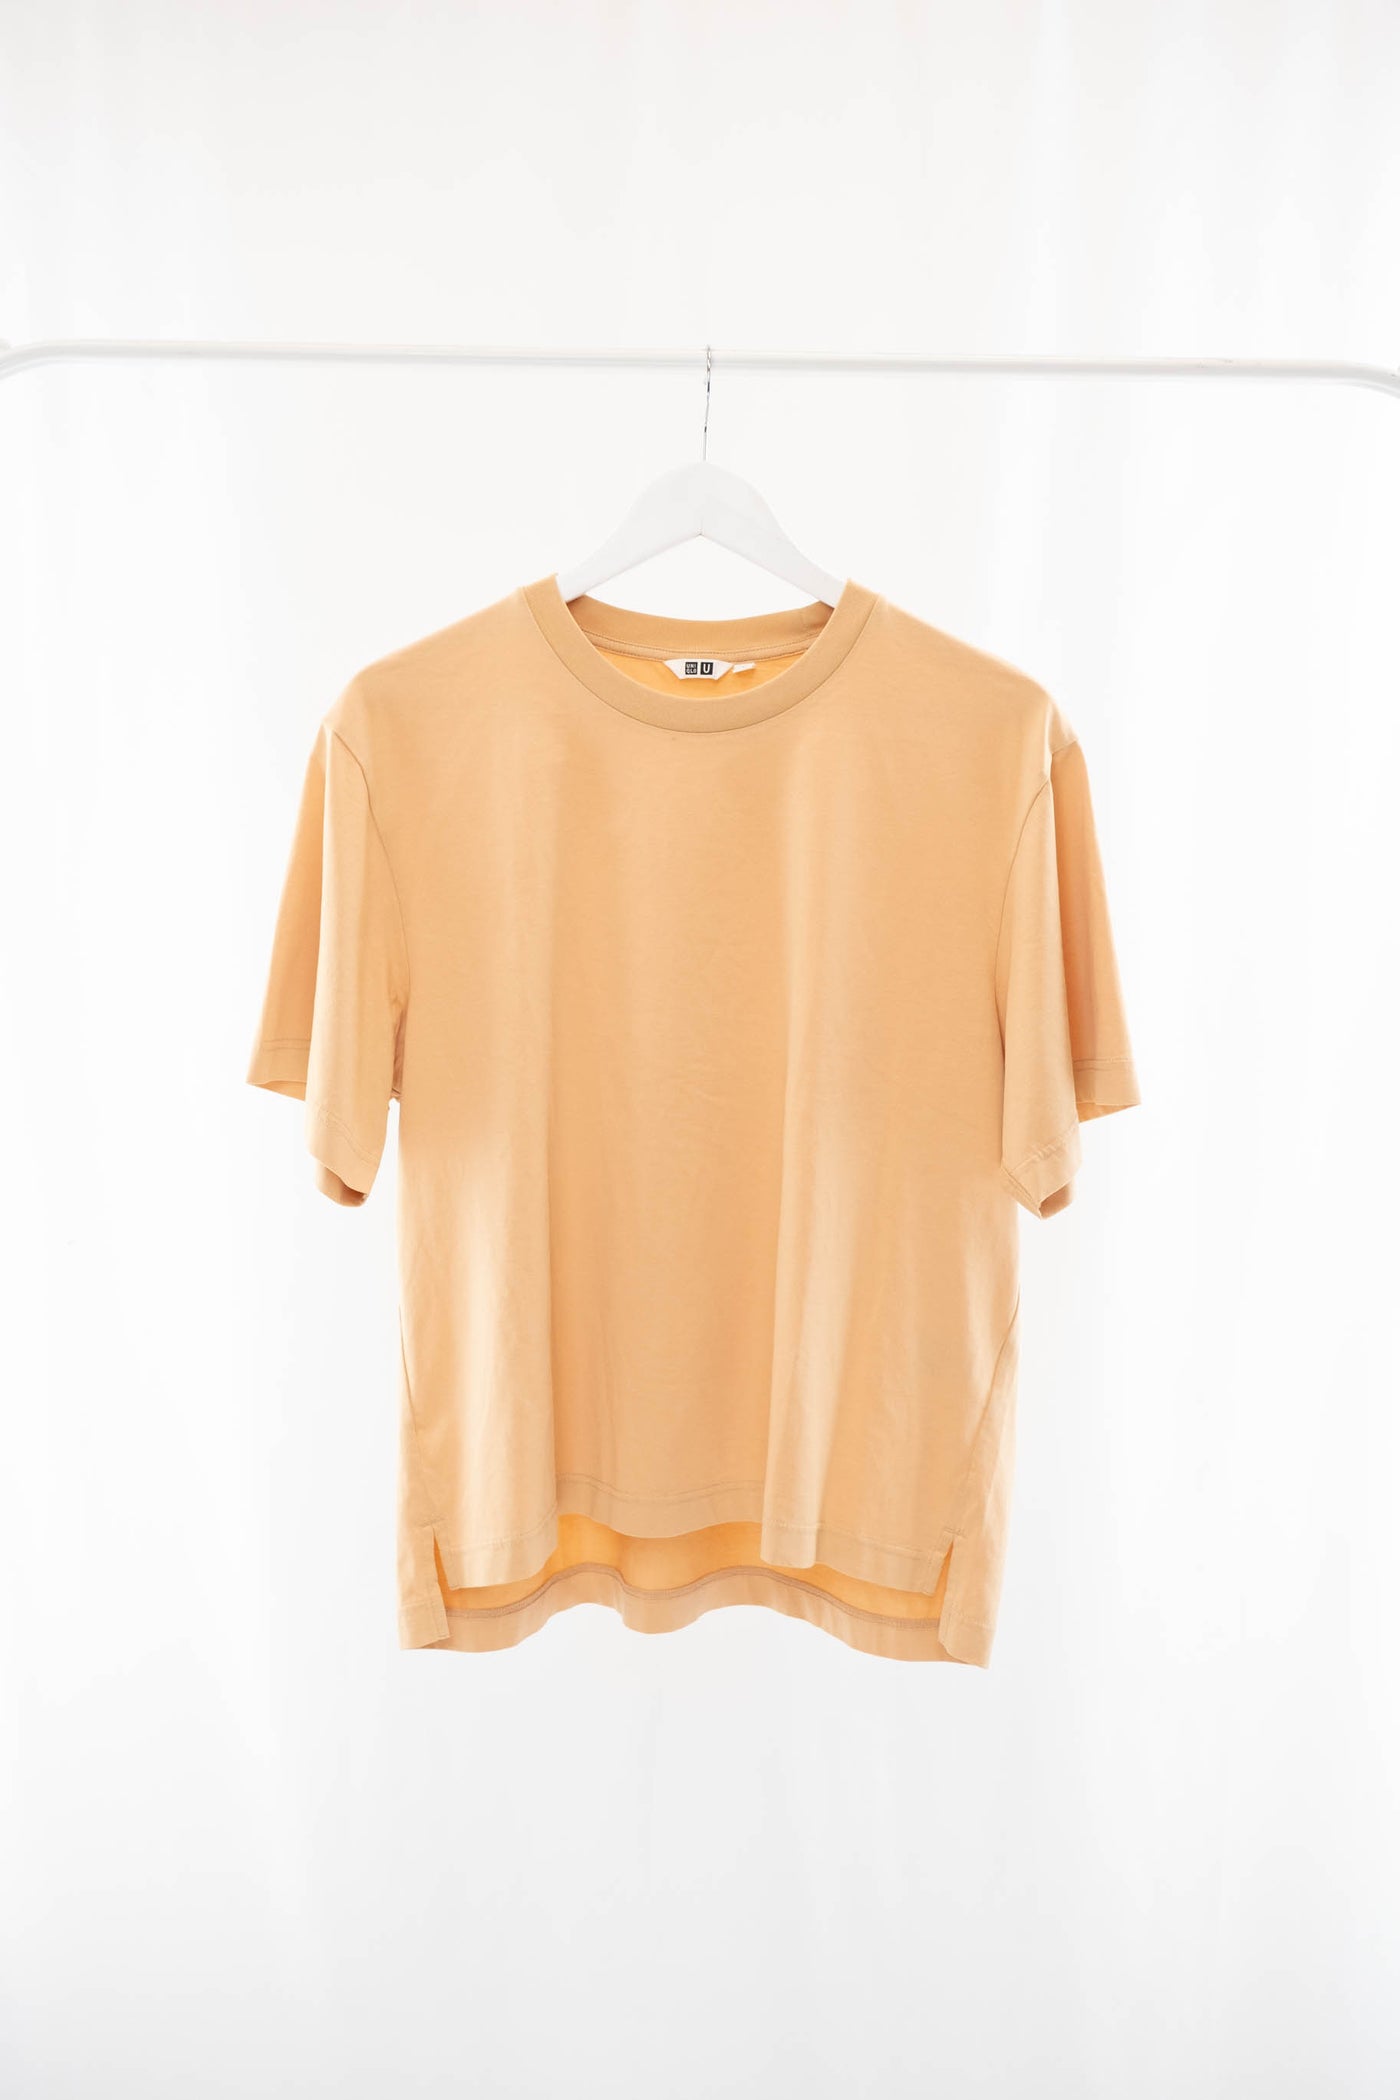 Camiseta naranja